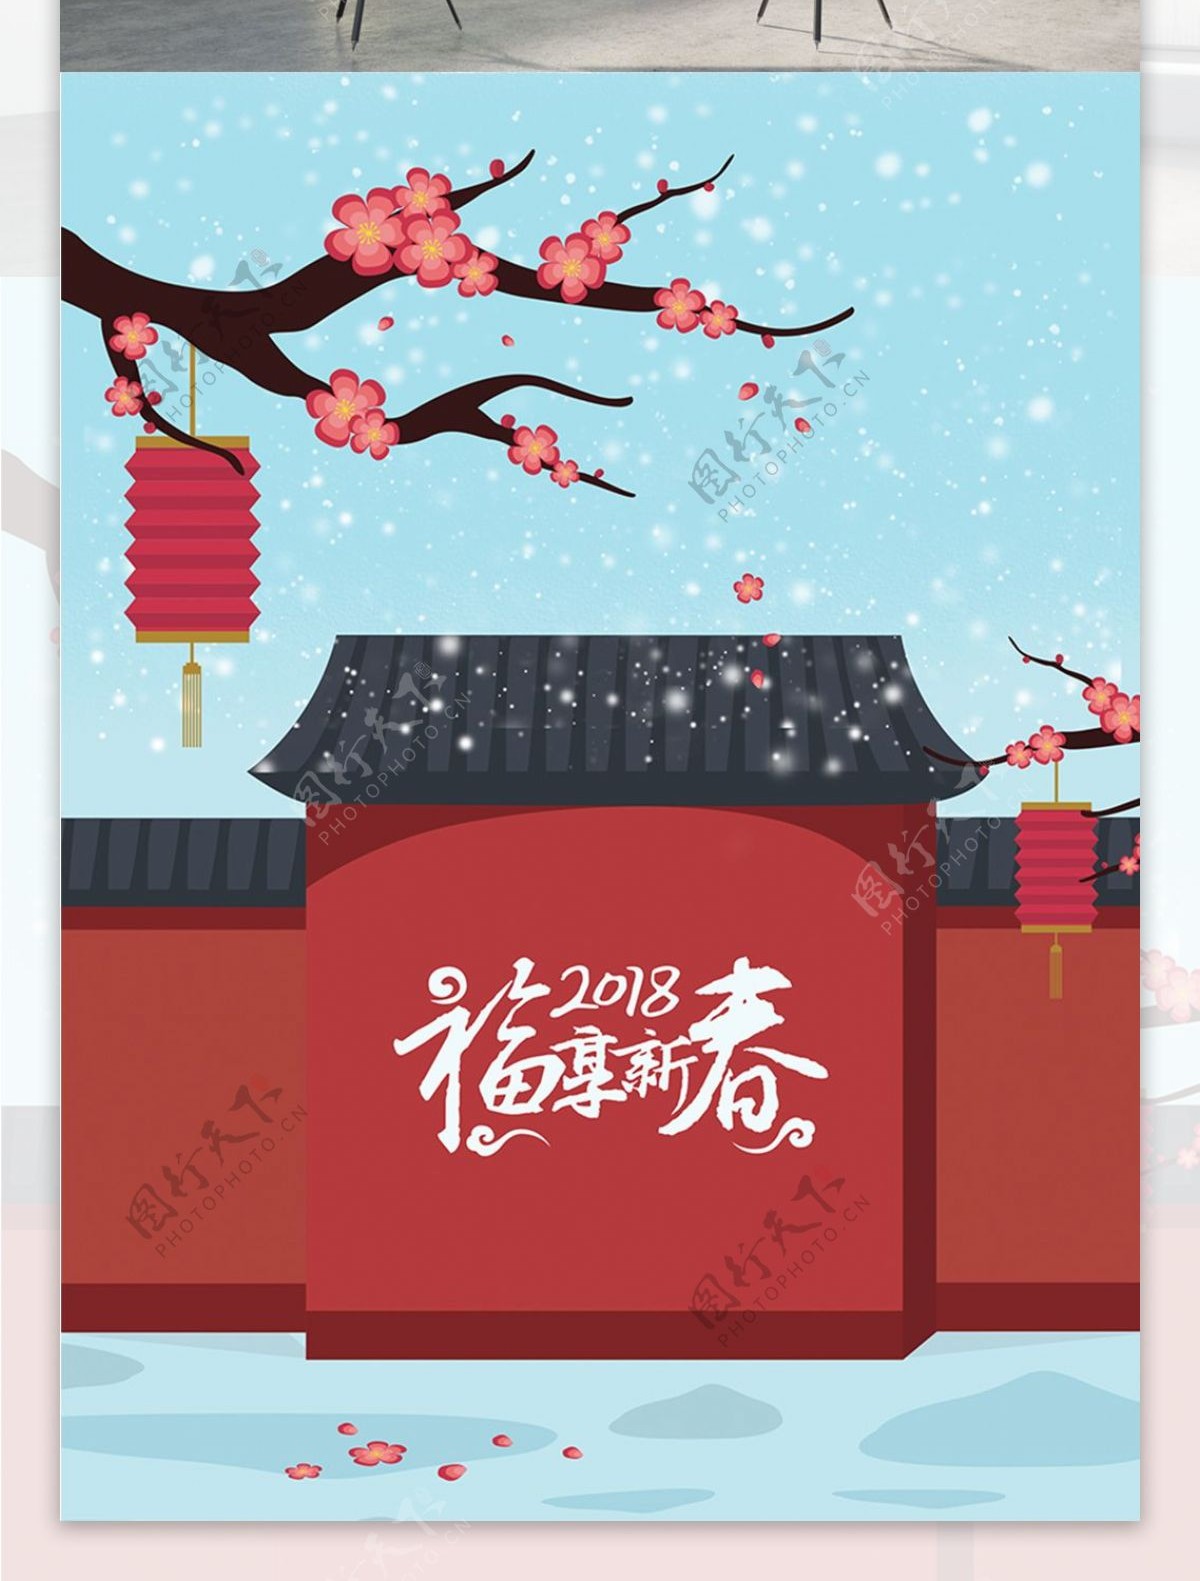 原创中国风插画红梅新年海报